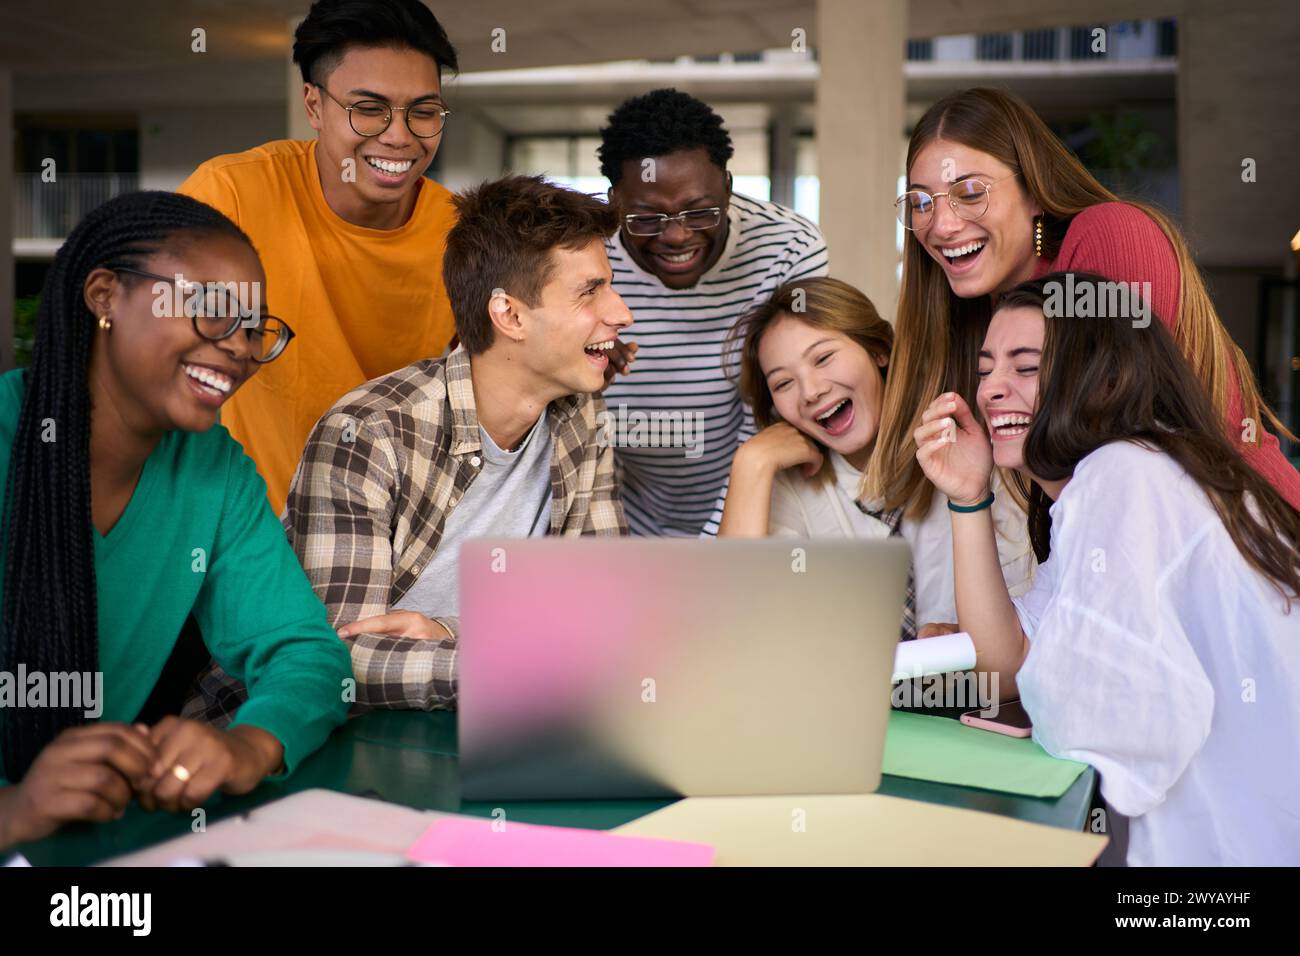 Gruppo di giovani studenti e persone che ridono usando un computer portatile nella caffetteria del campus universitario Foto Stock